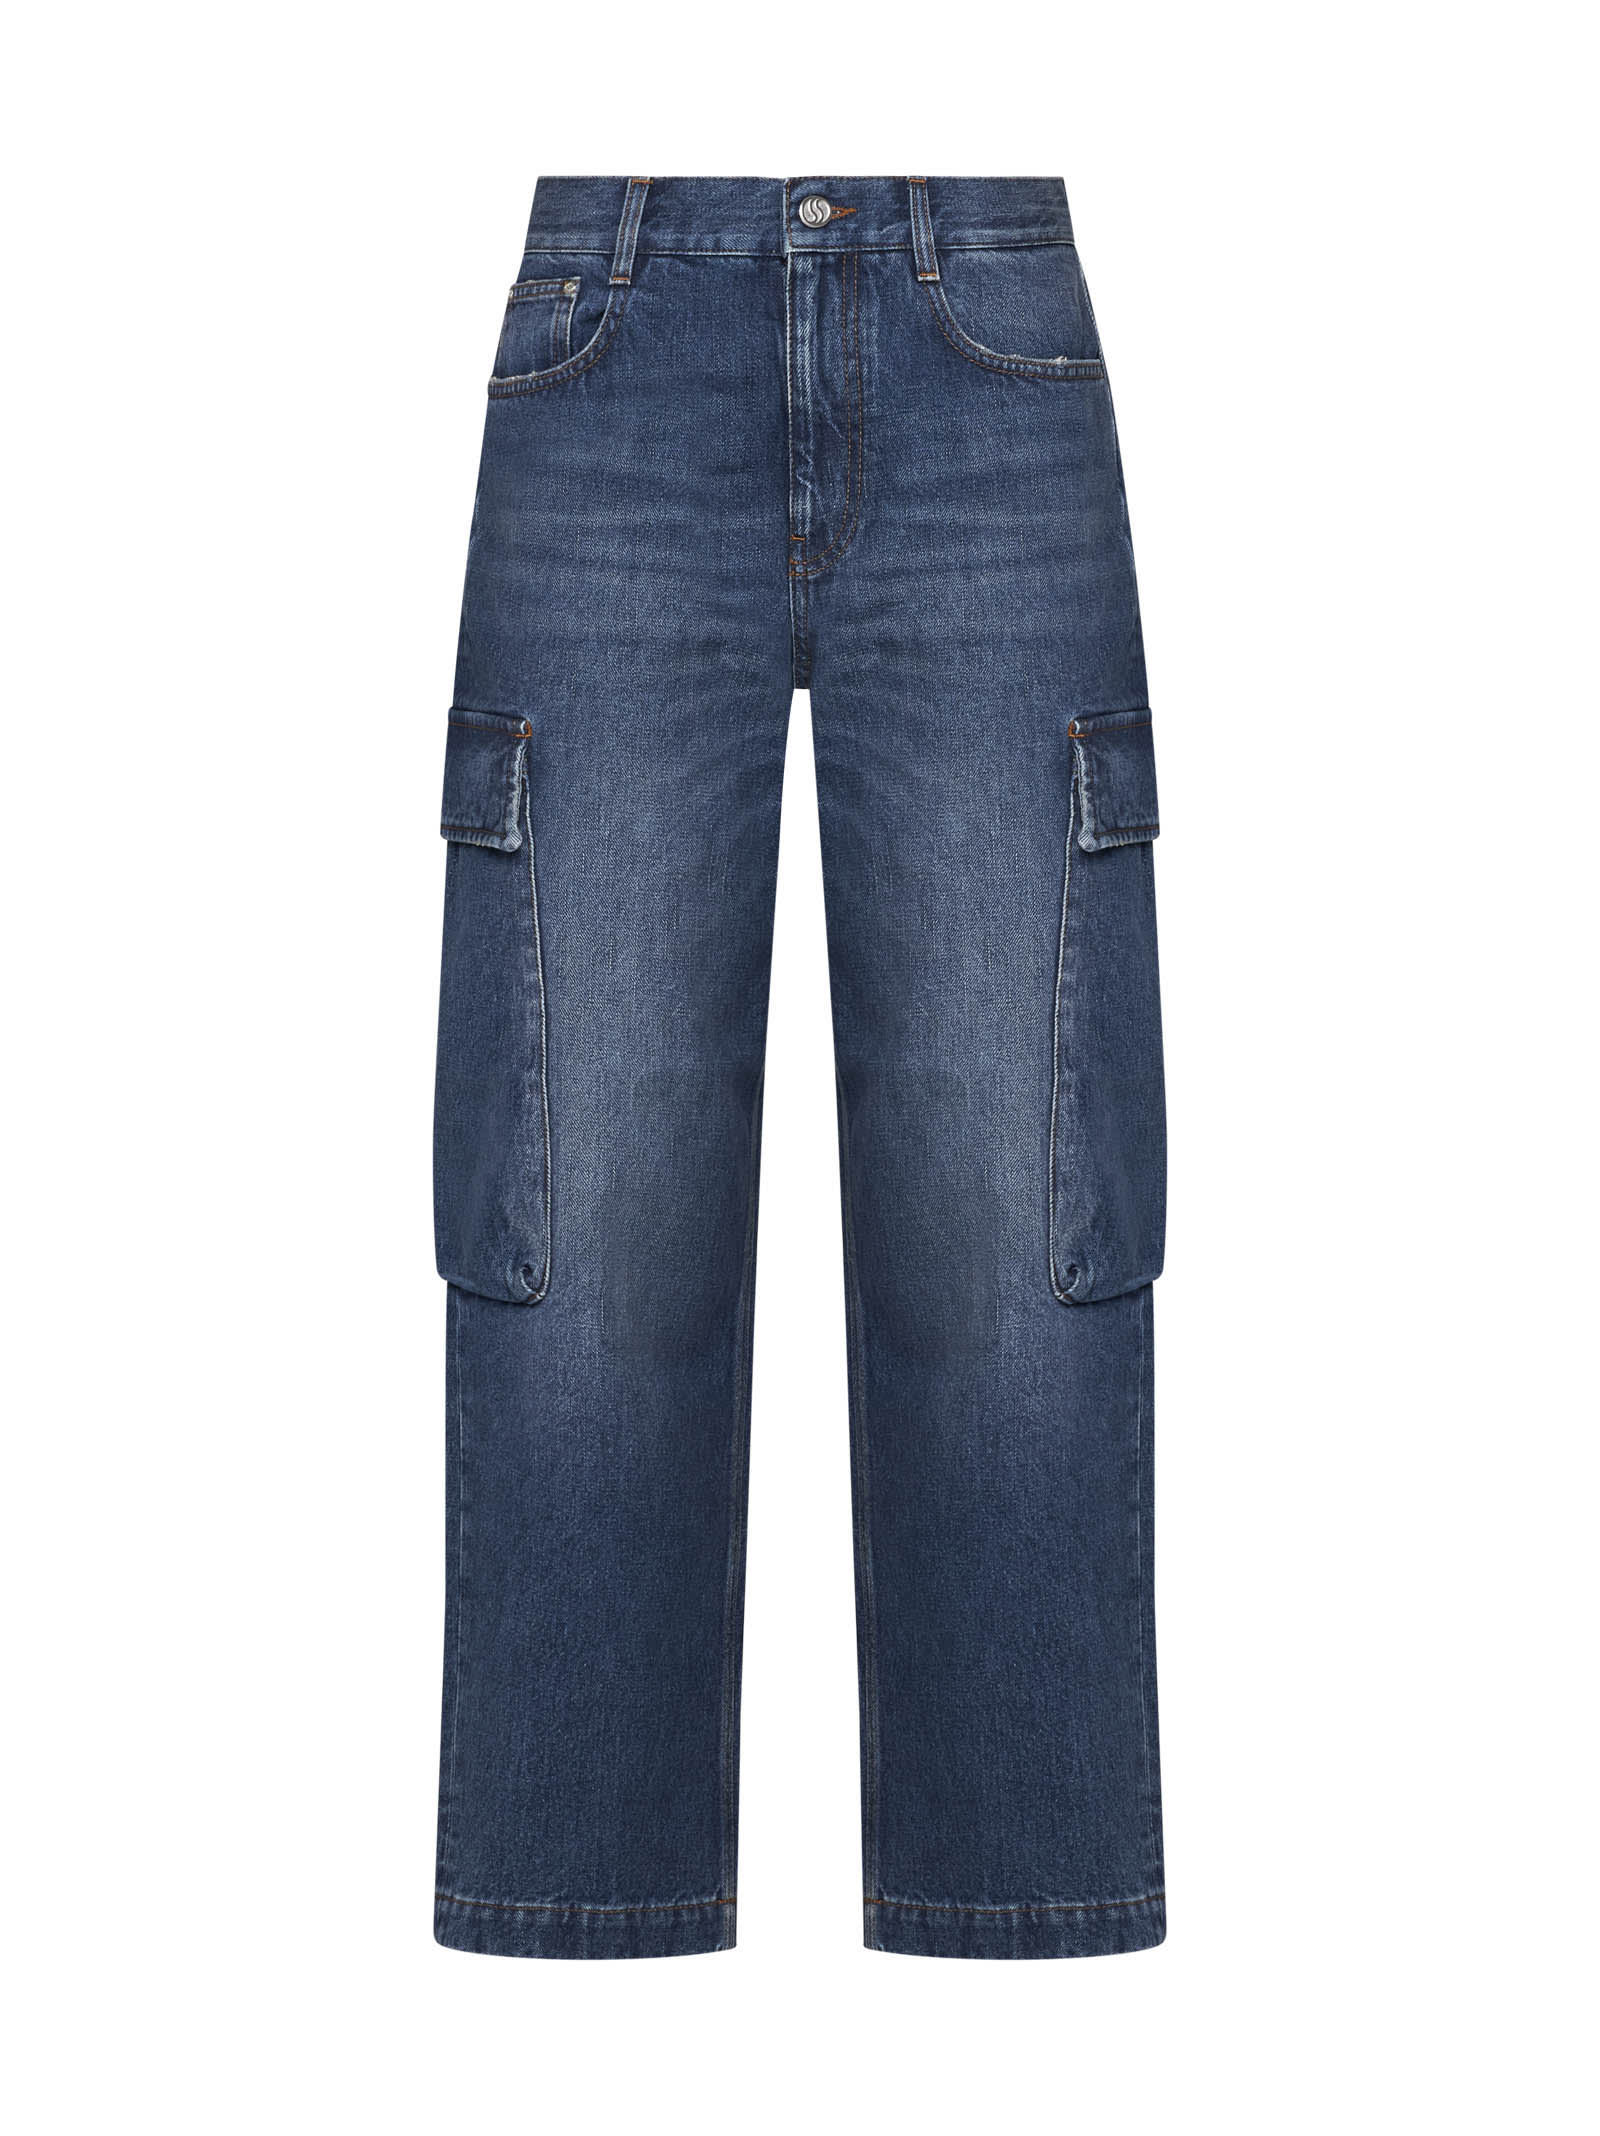 Stella Mccartney Jeans In Metallic